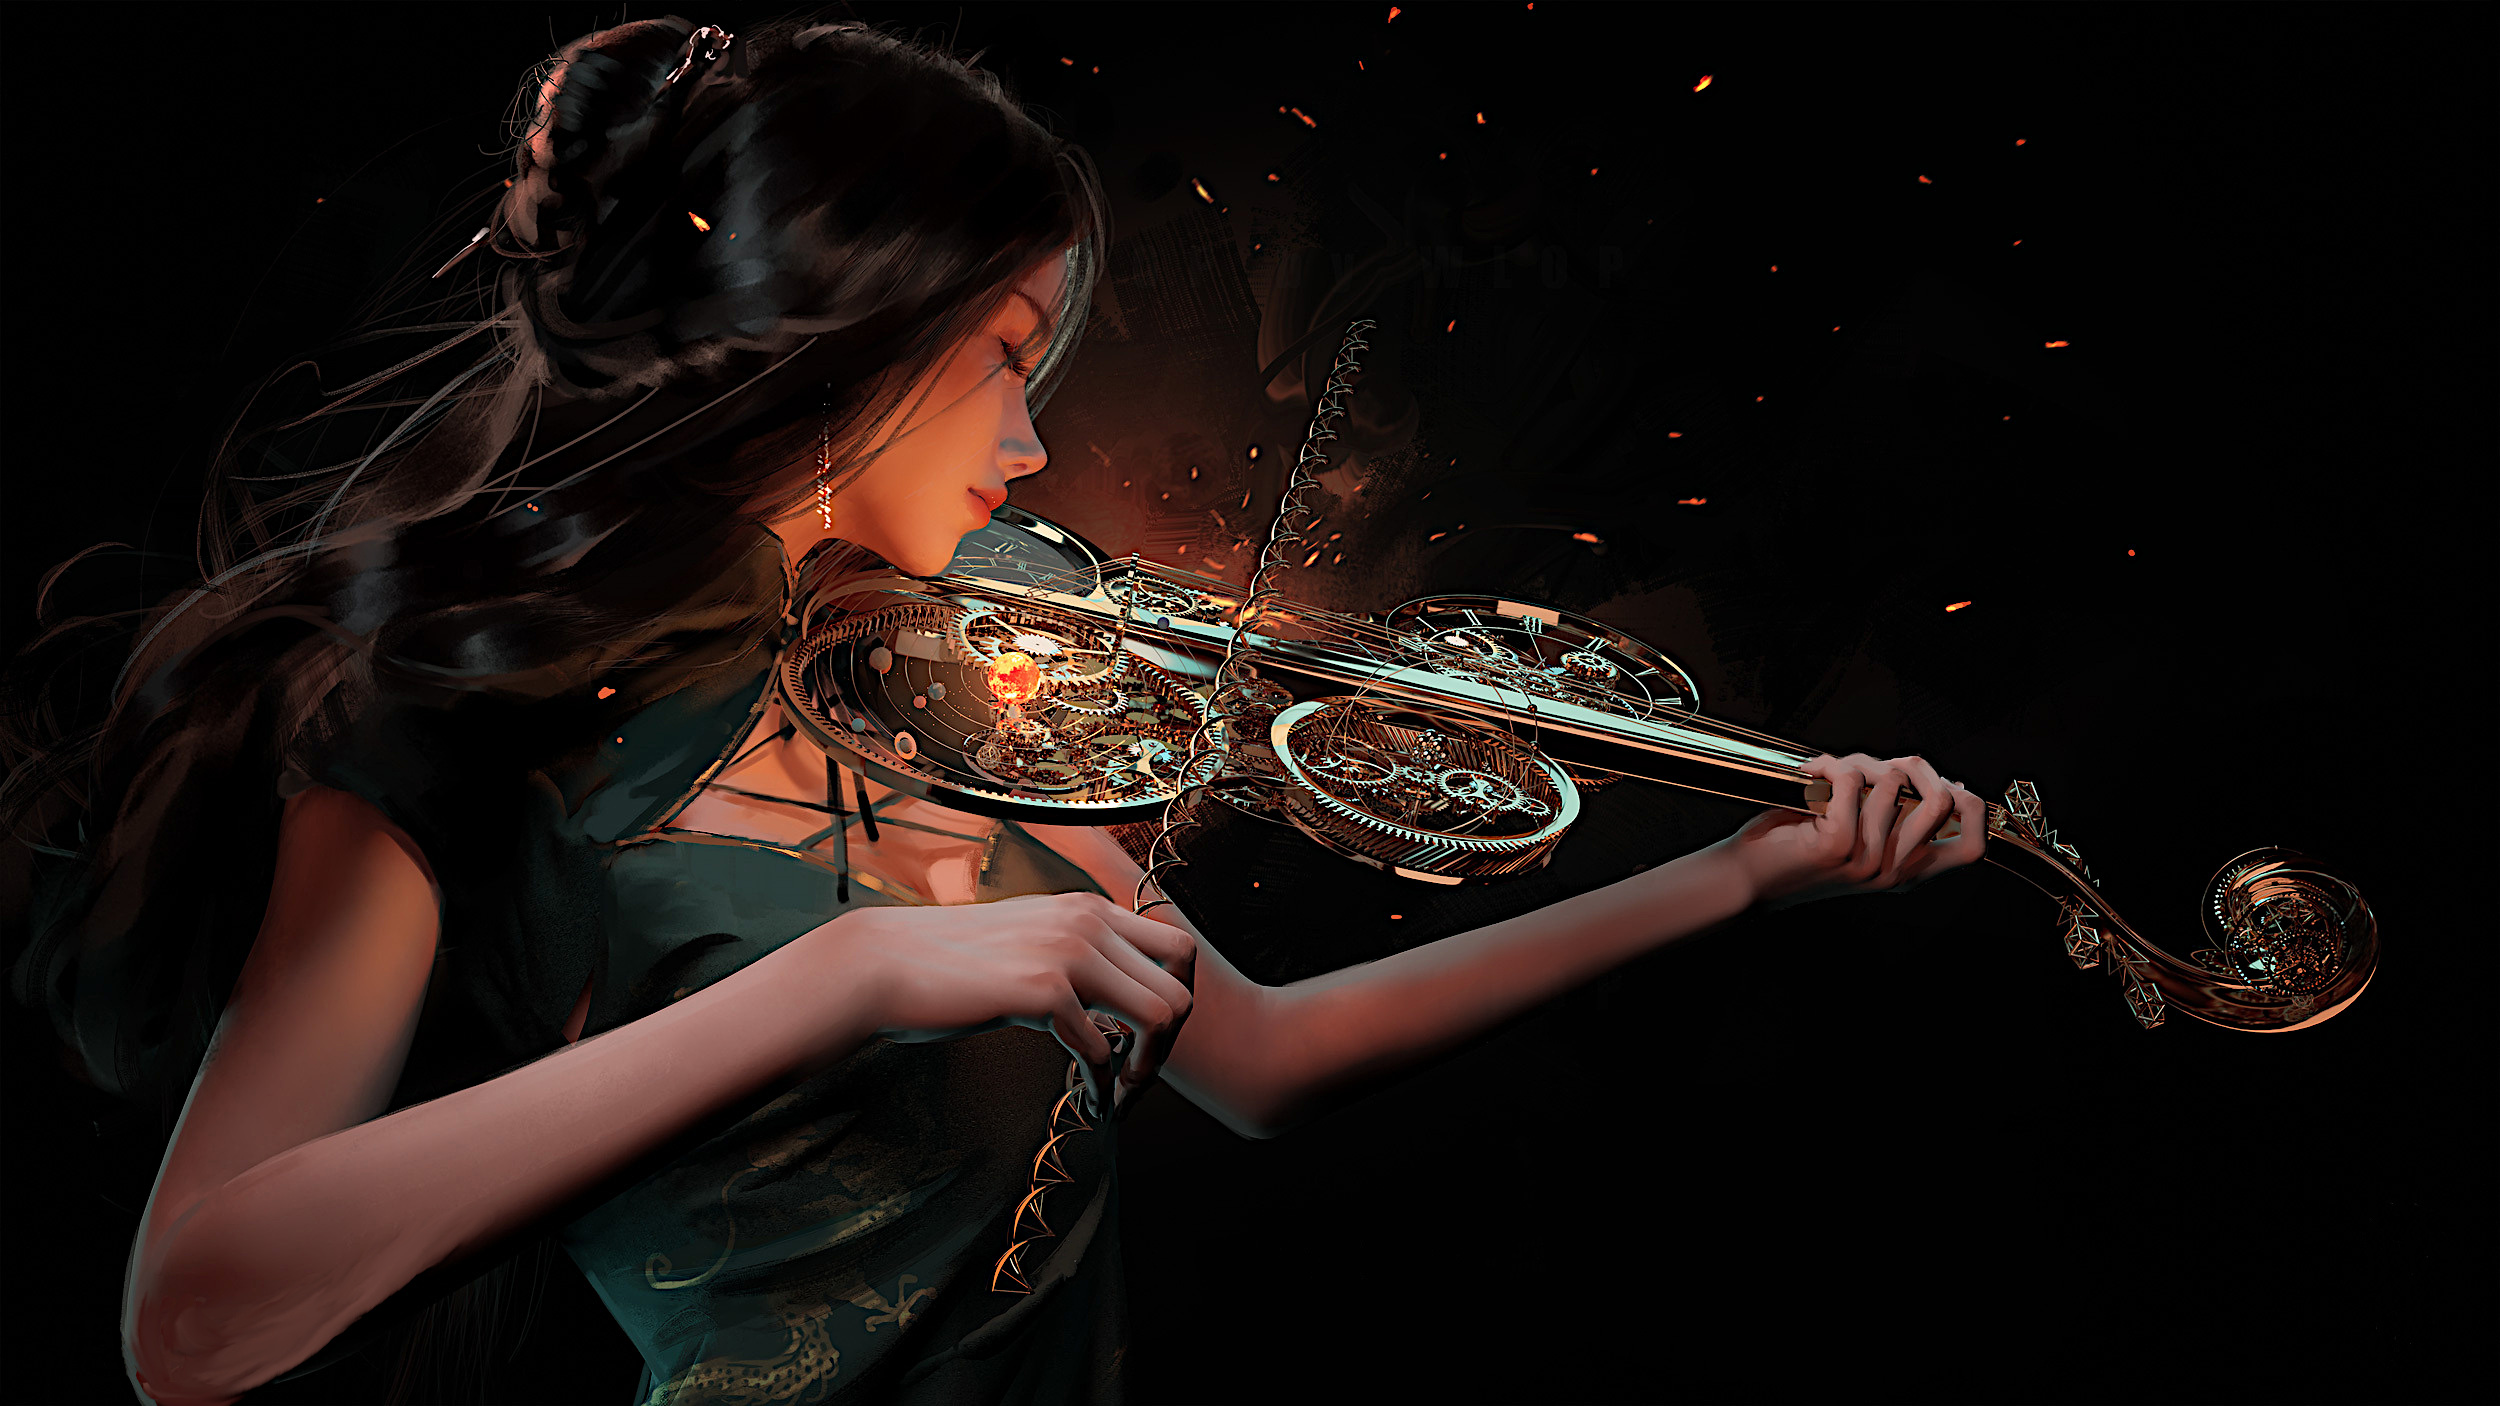 Бесплатное фото Девушка играющая на огненной скрипке